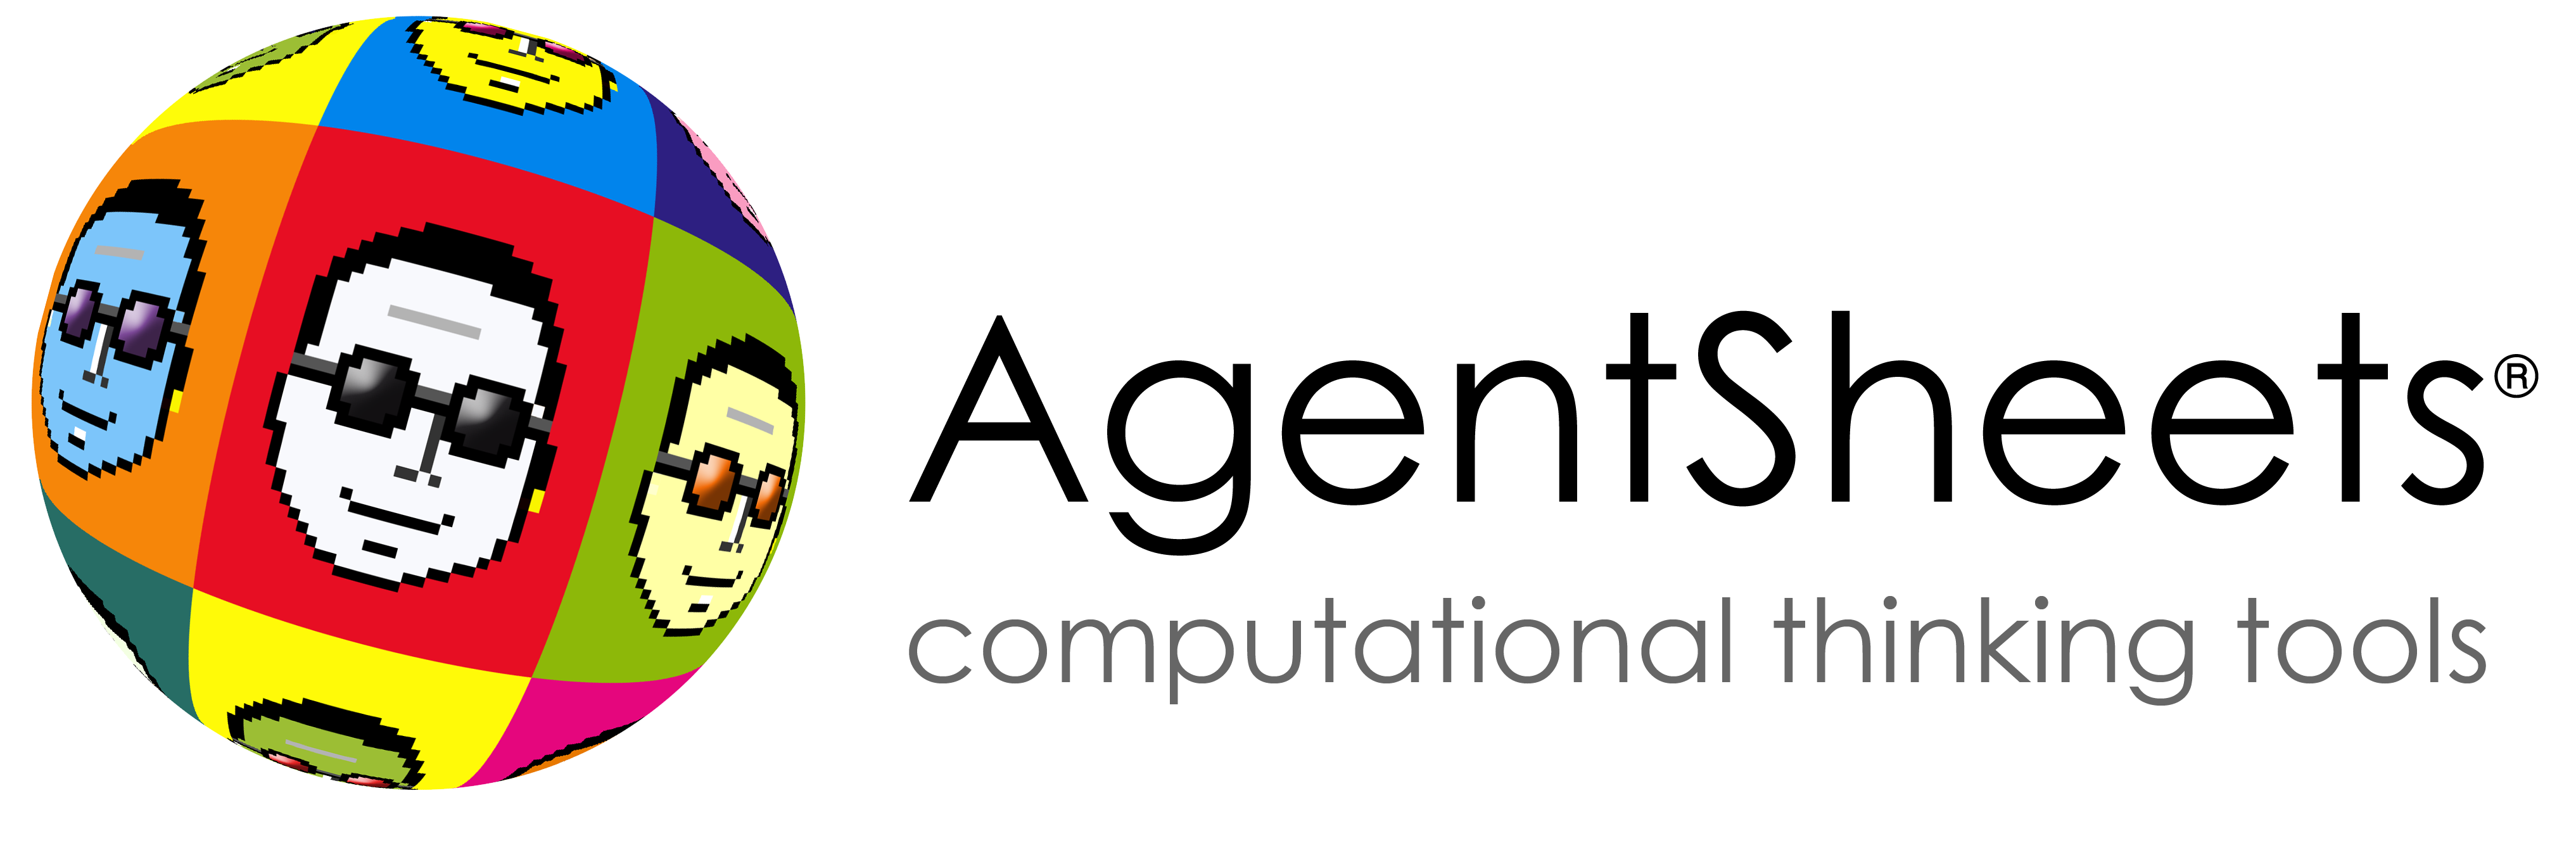 AgentSheets computational thinking Logo